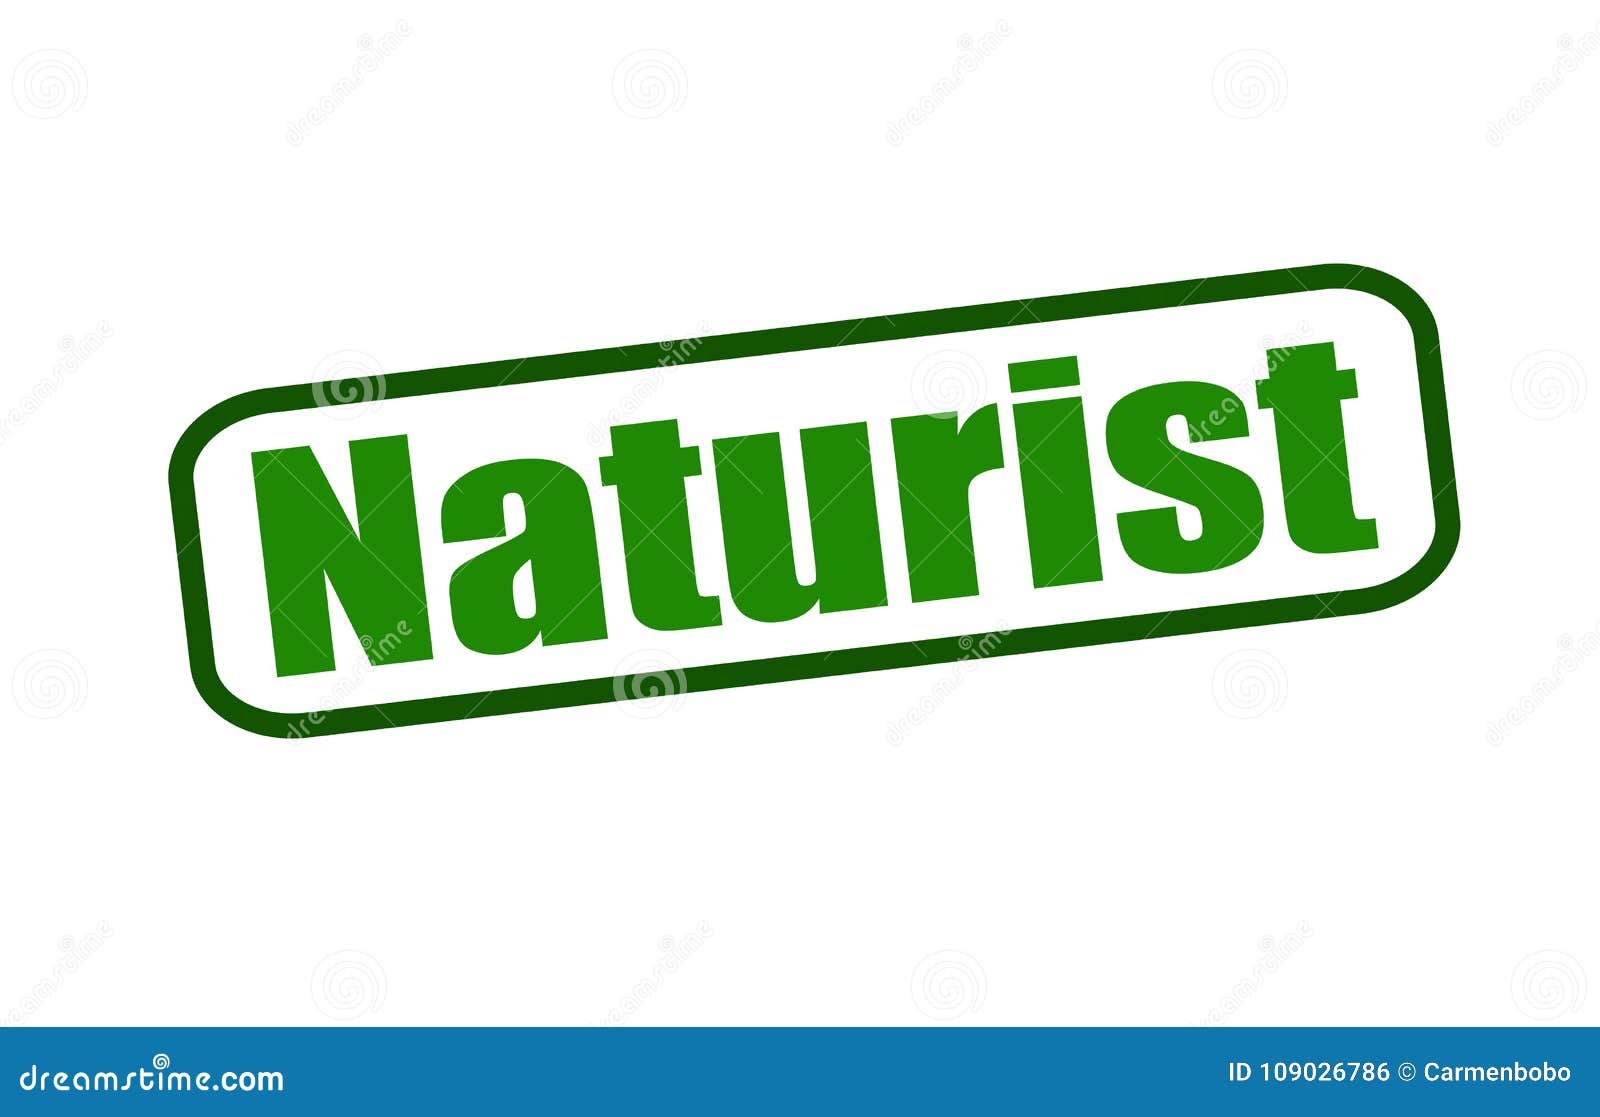 naturist